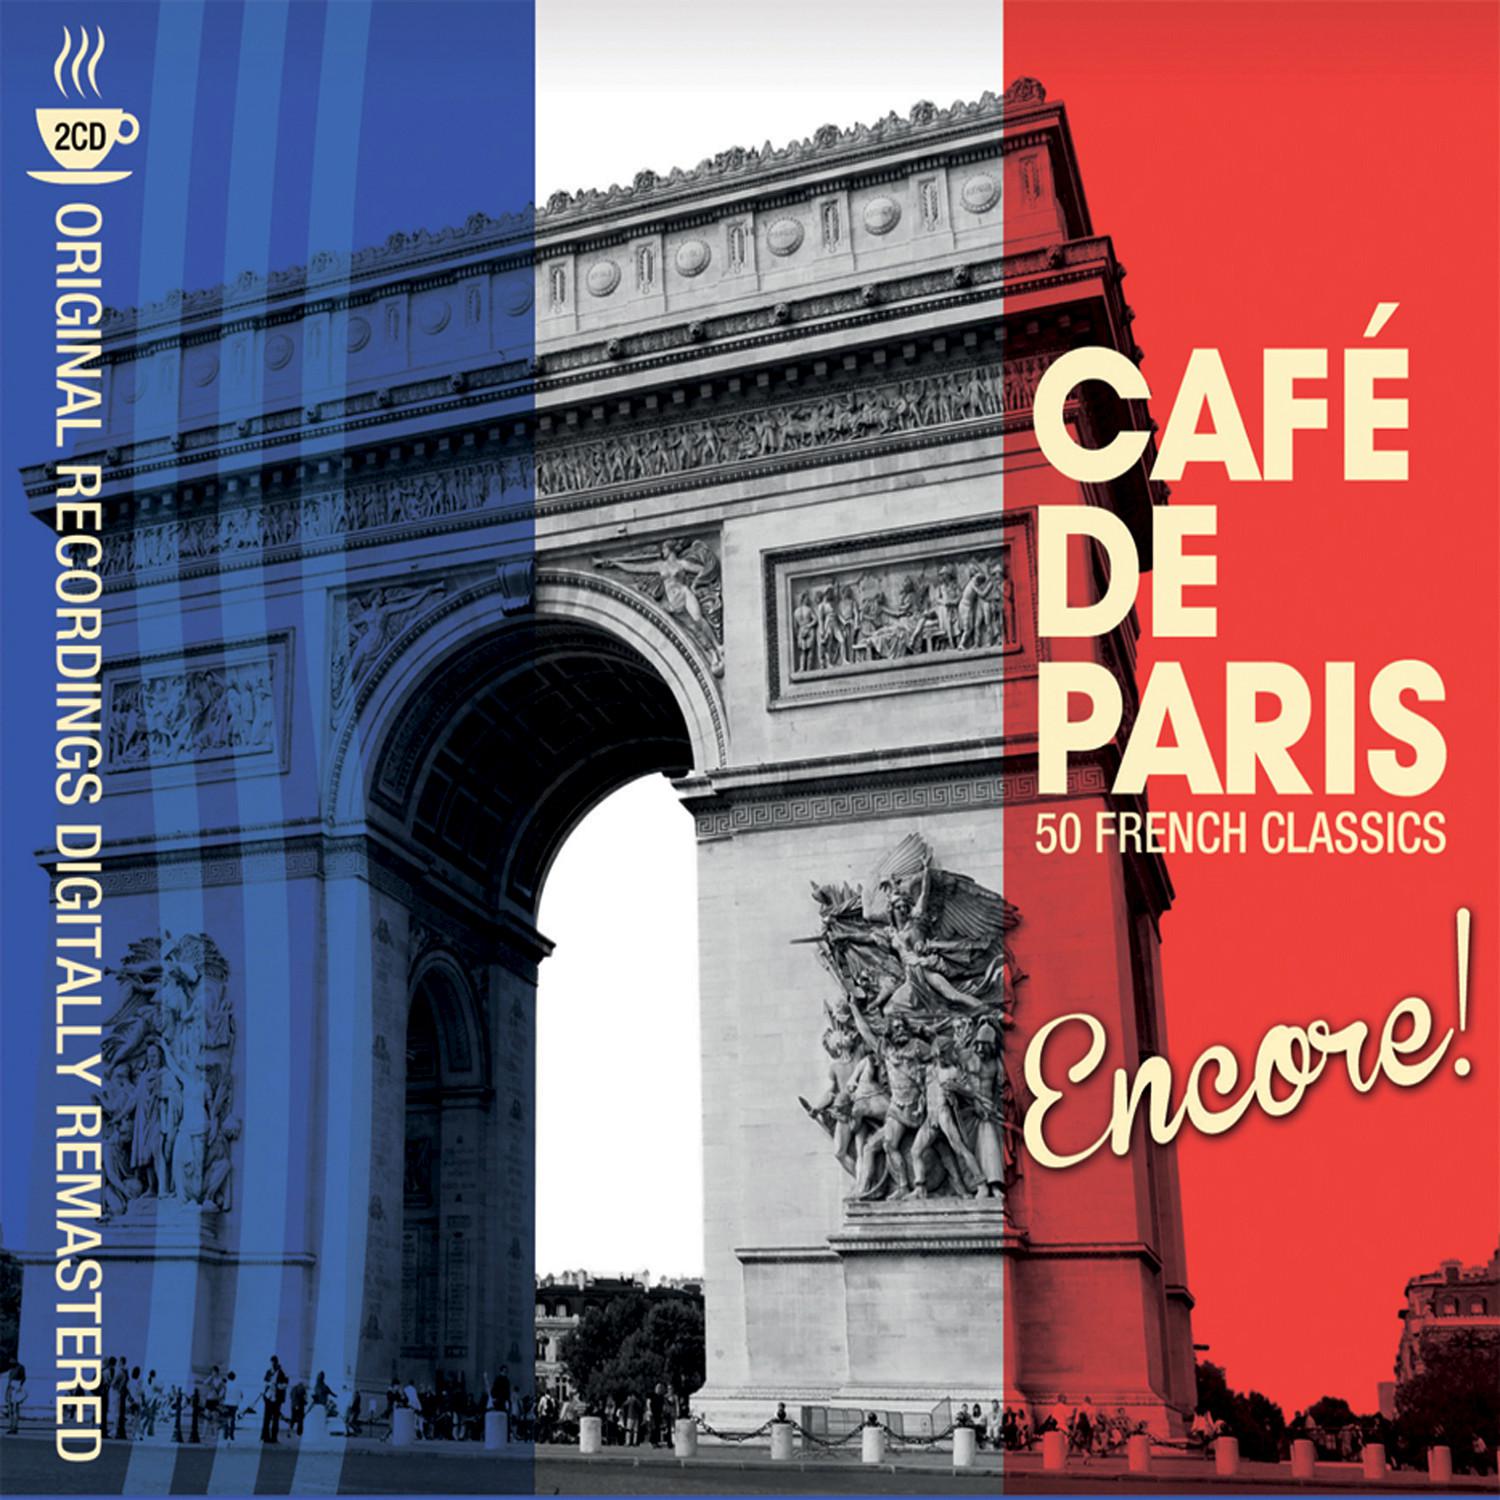 Cafe de Paris  Encore!